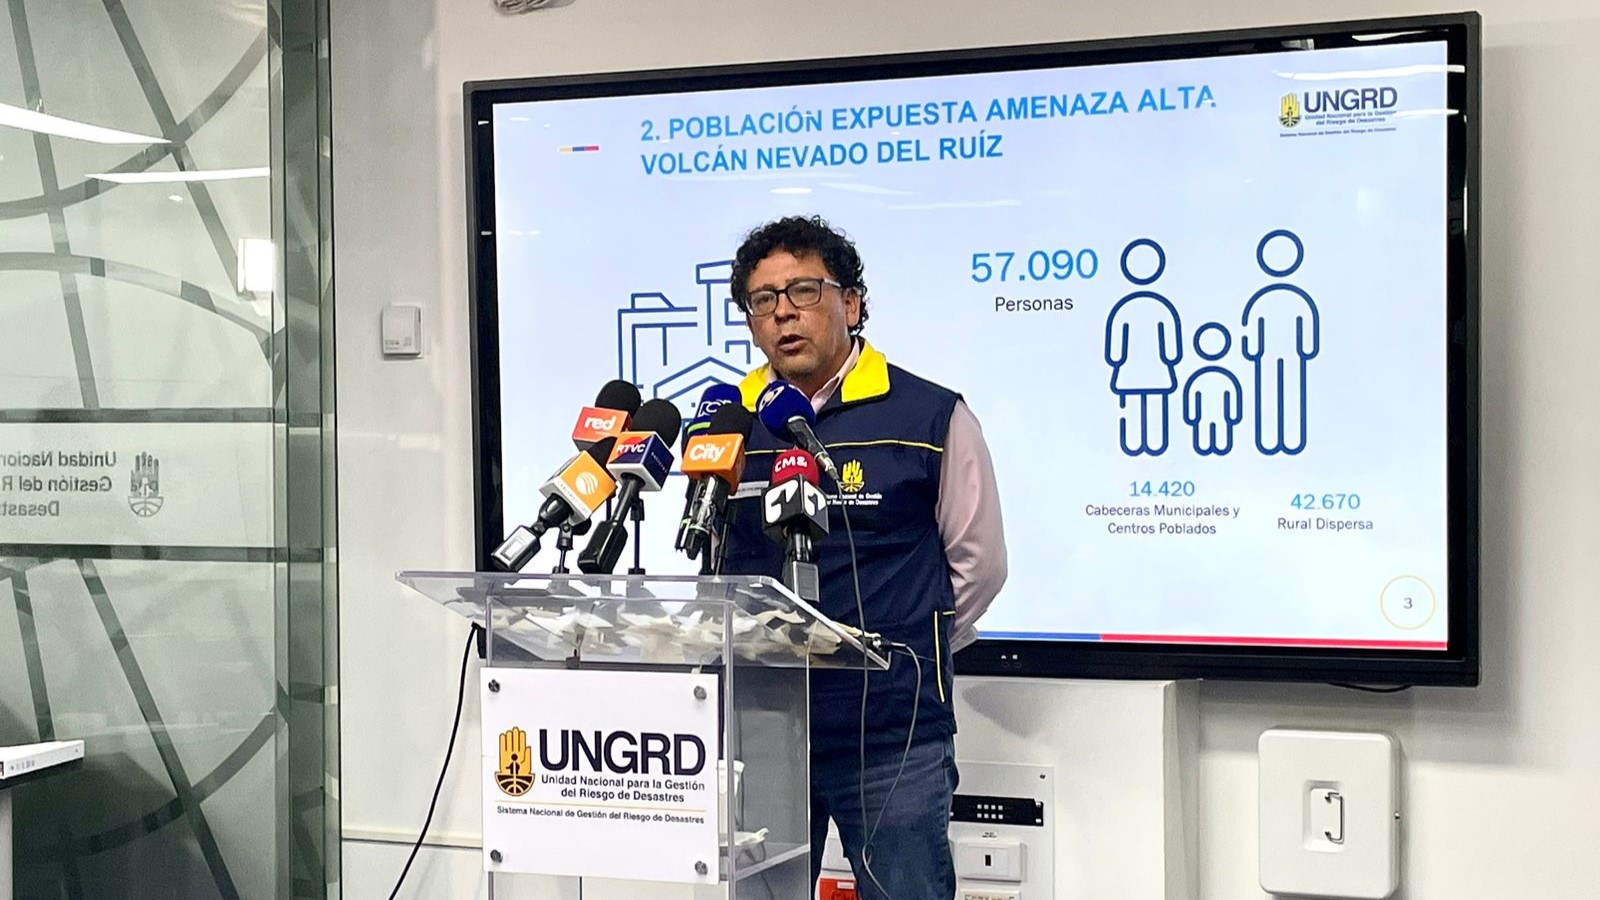 Ungrd anunció medidas frente a actividad del Nevado del Ruiz: se estudia evacuación de 57.000 personas de poblaciones cercanas